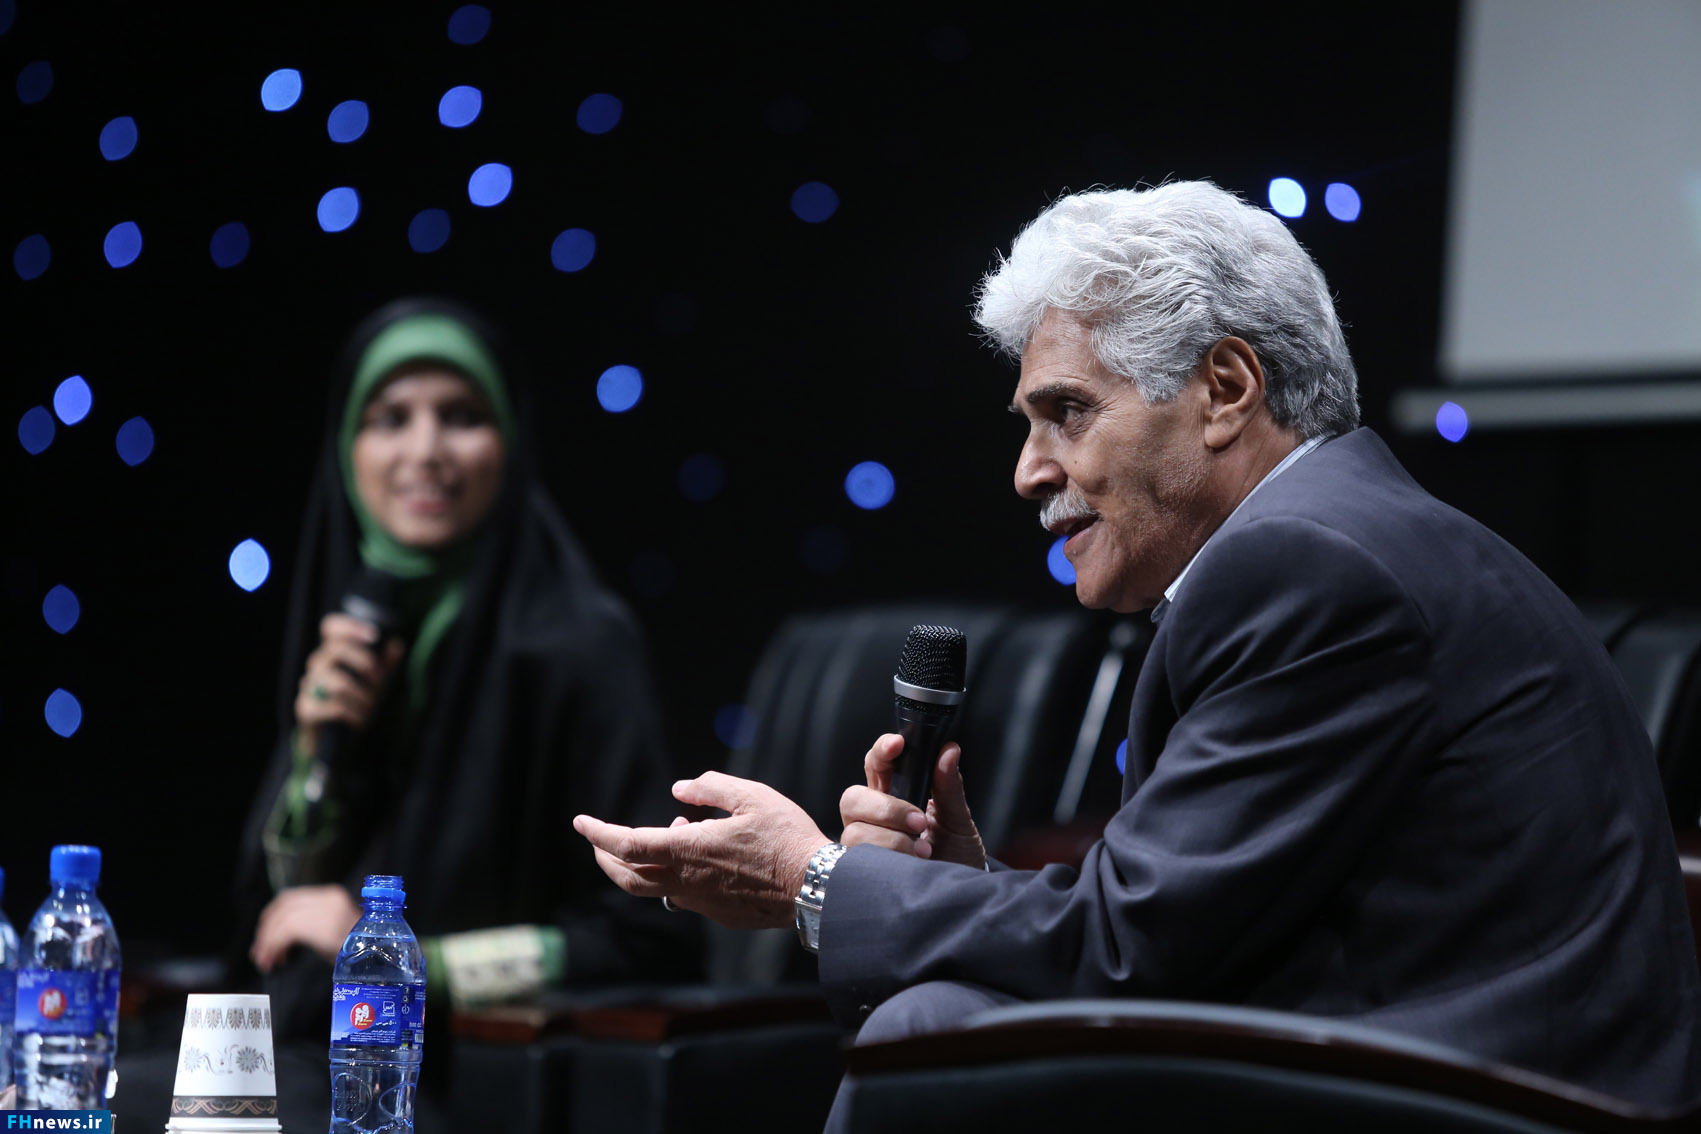 درویش: سینمای ایران در خوابی آشفته است